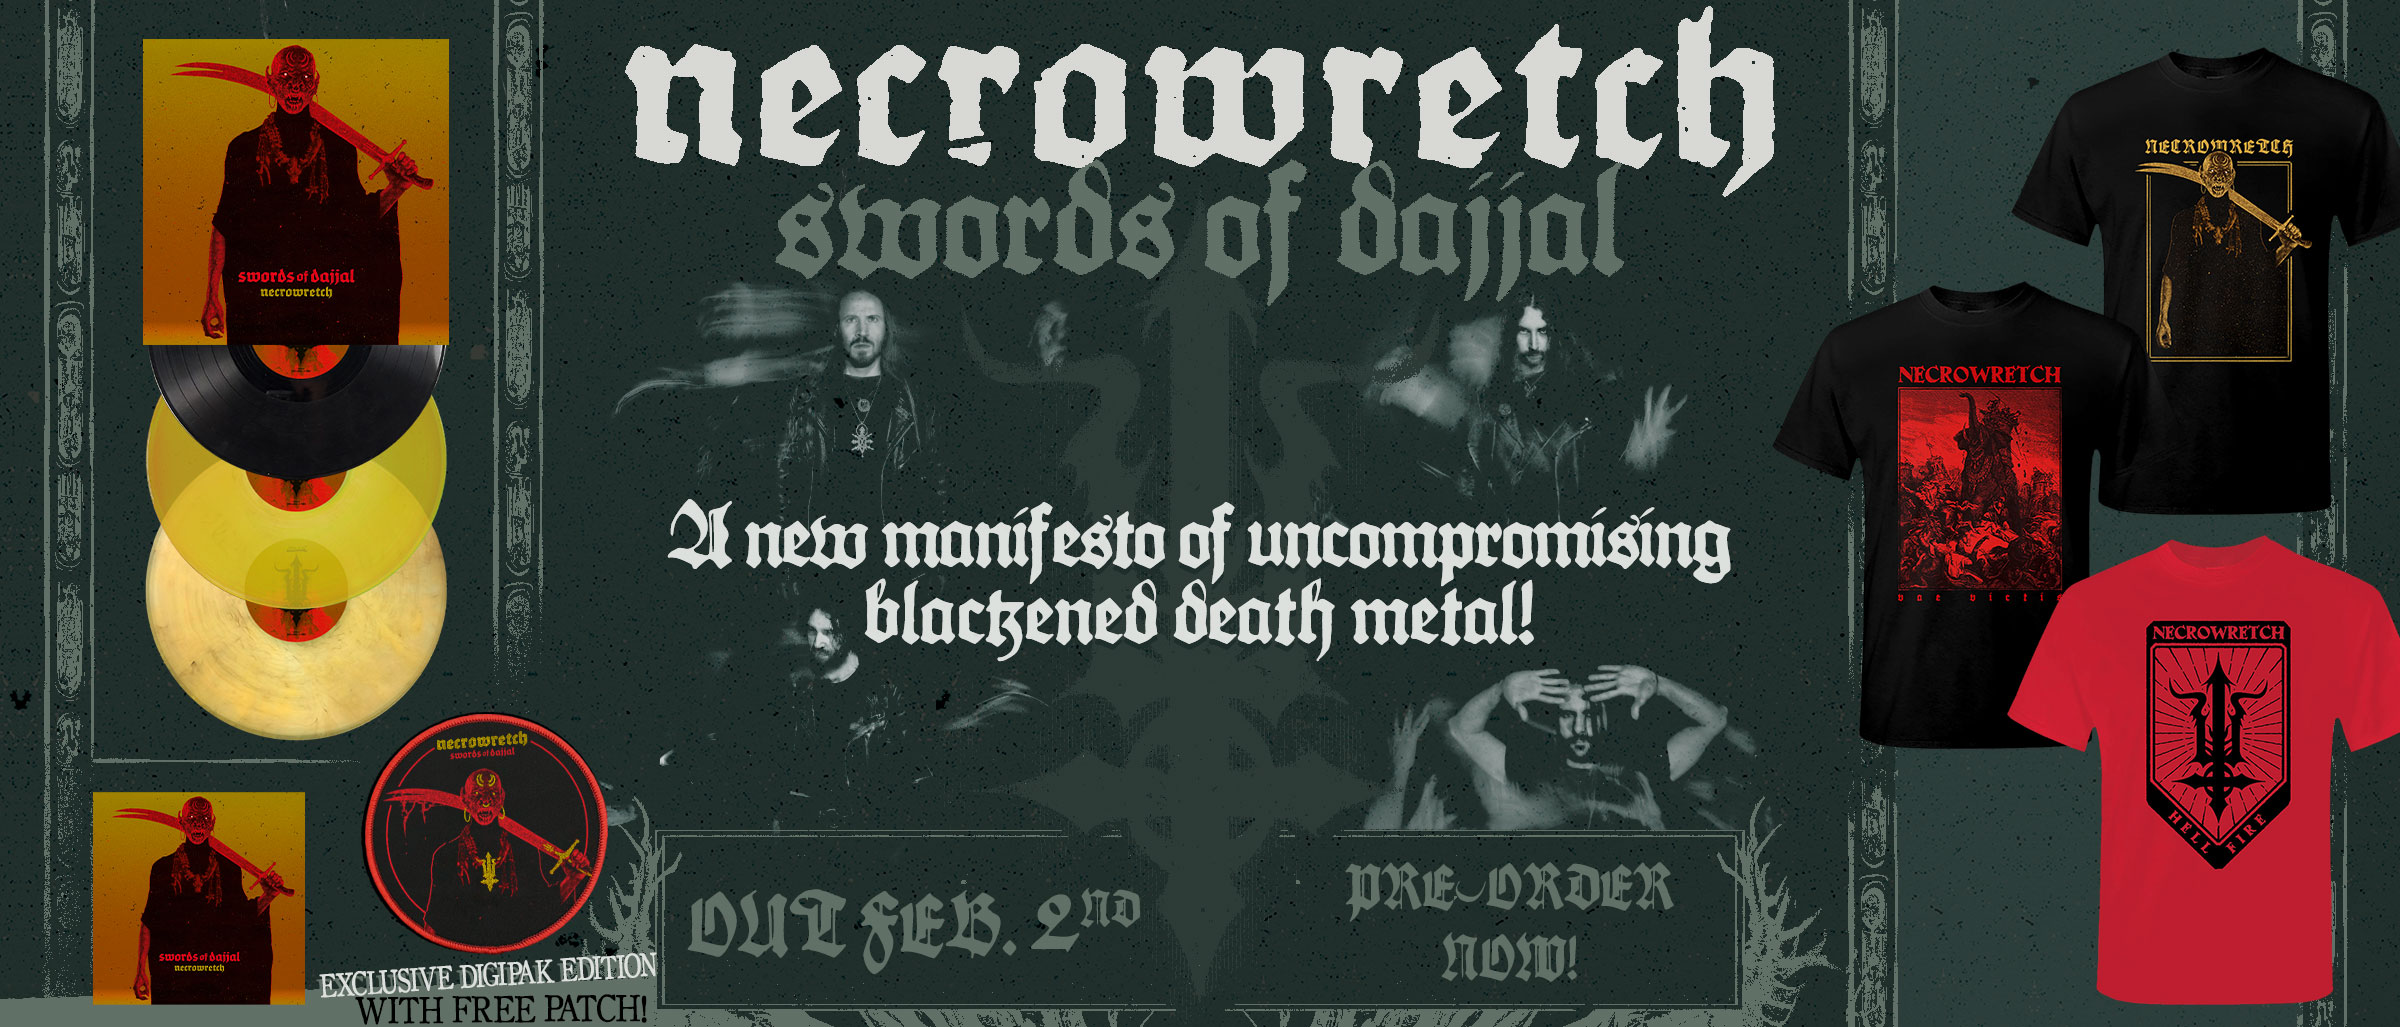 Necrowretch – Swods of Dajjal